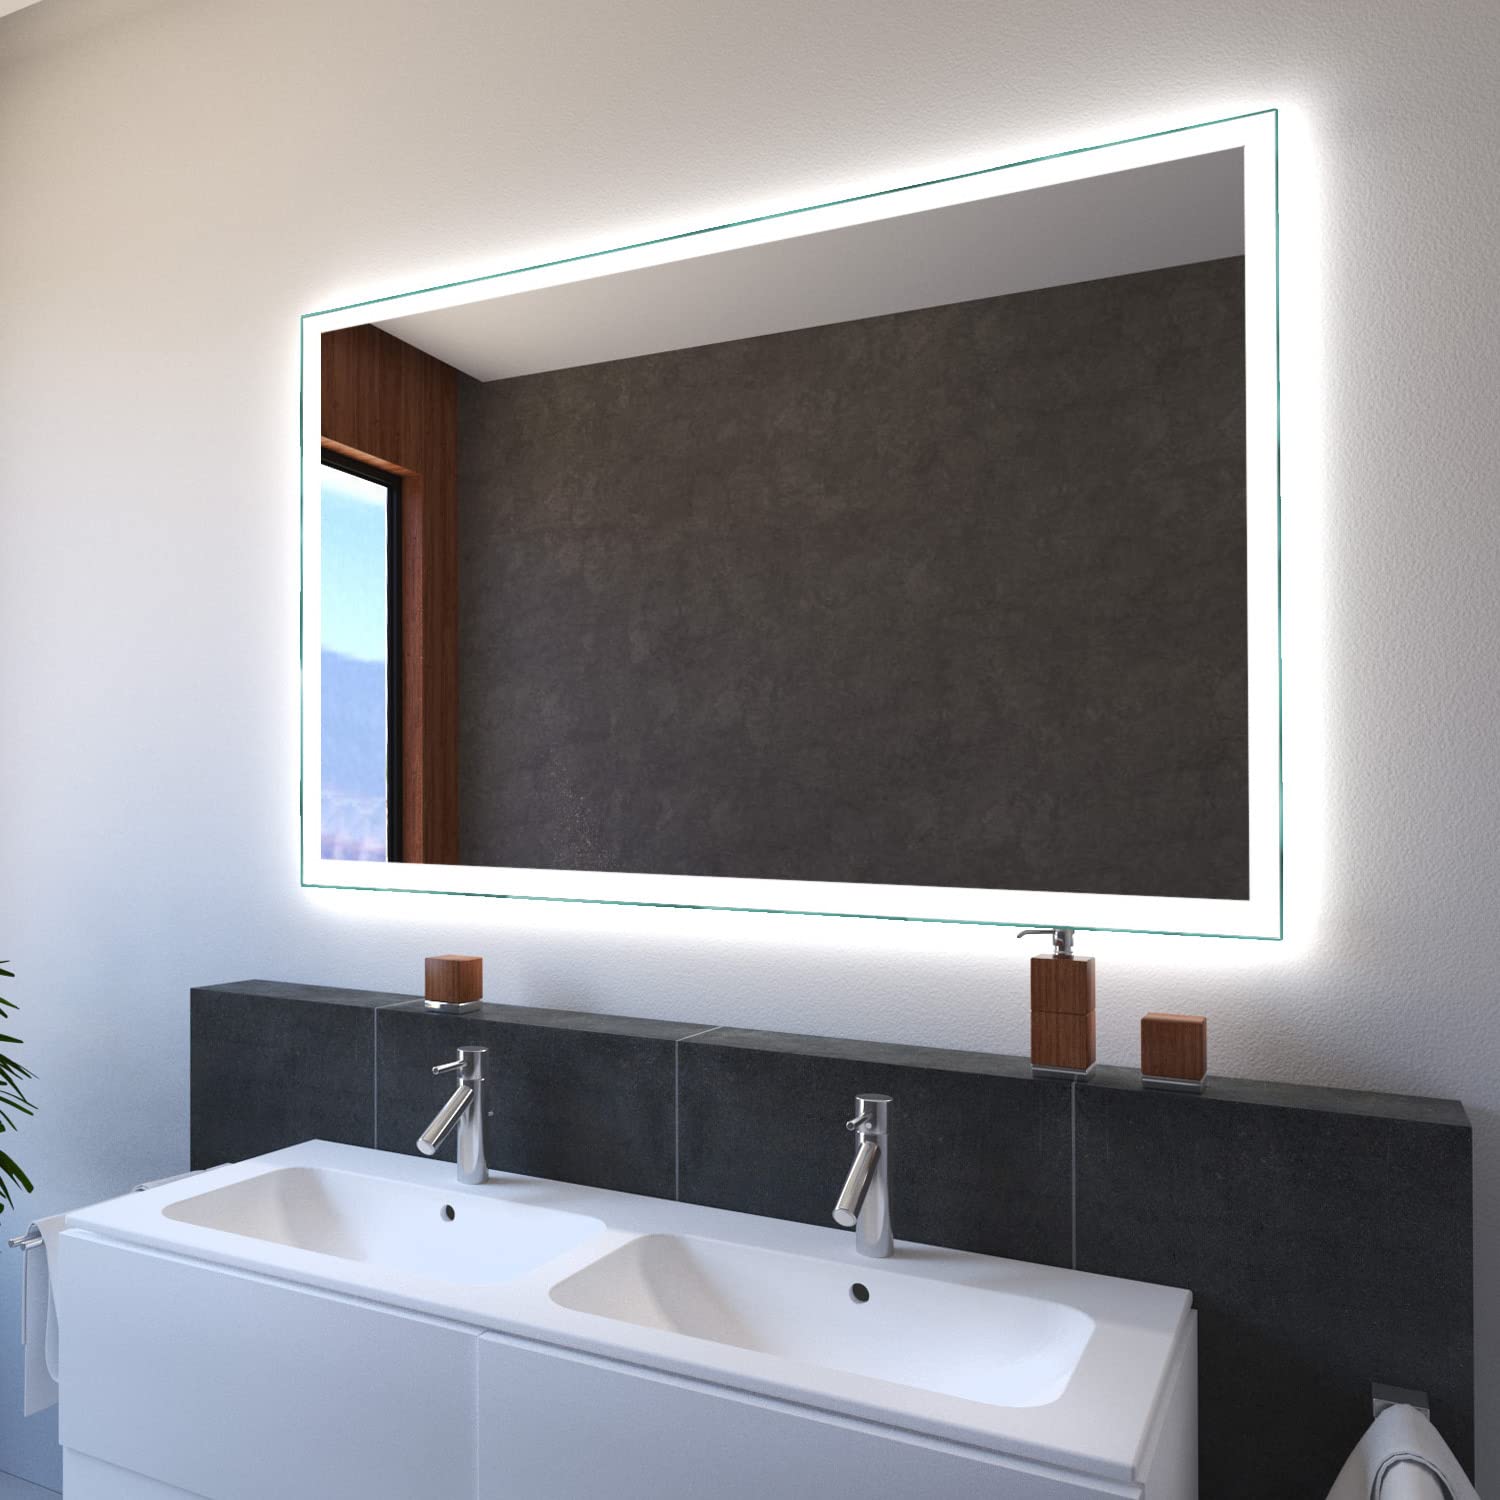 SARAR Wandspiegel mit LED-Beleuchtung 60x130cm Made in Germany Designo MA4110 Badspiegel Spiegel mit Beleuchtung Badezimmerspiegel nach-auf Maß